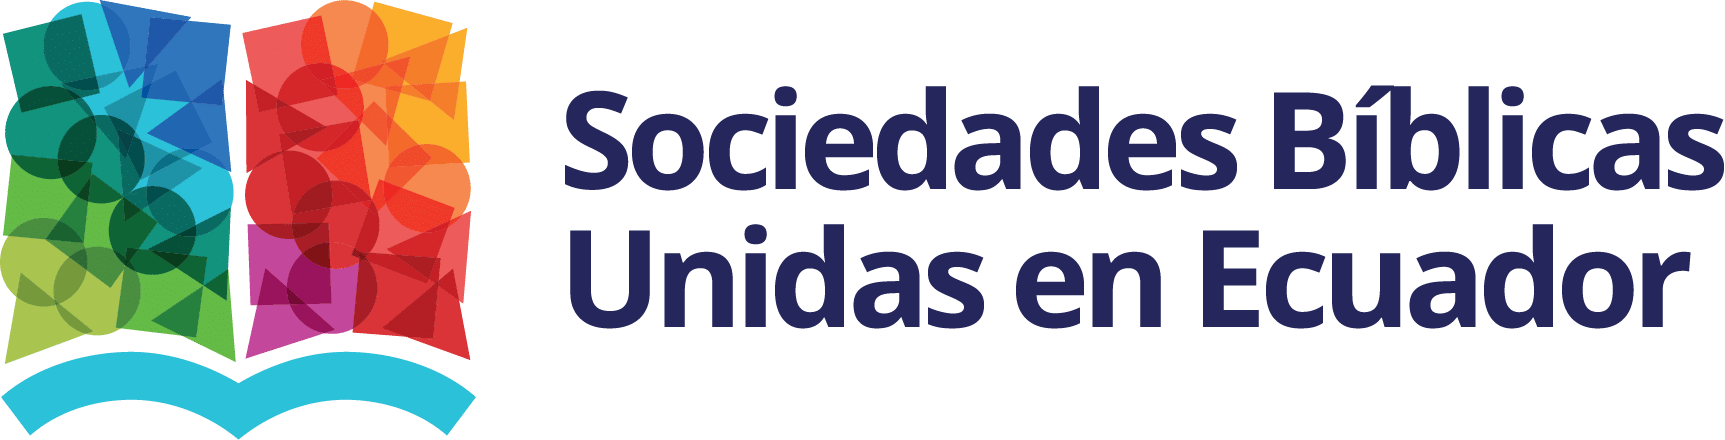 Sociedades Bíblicas Unidas en Ecuador